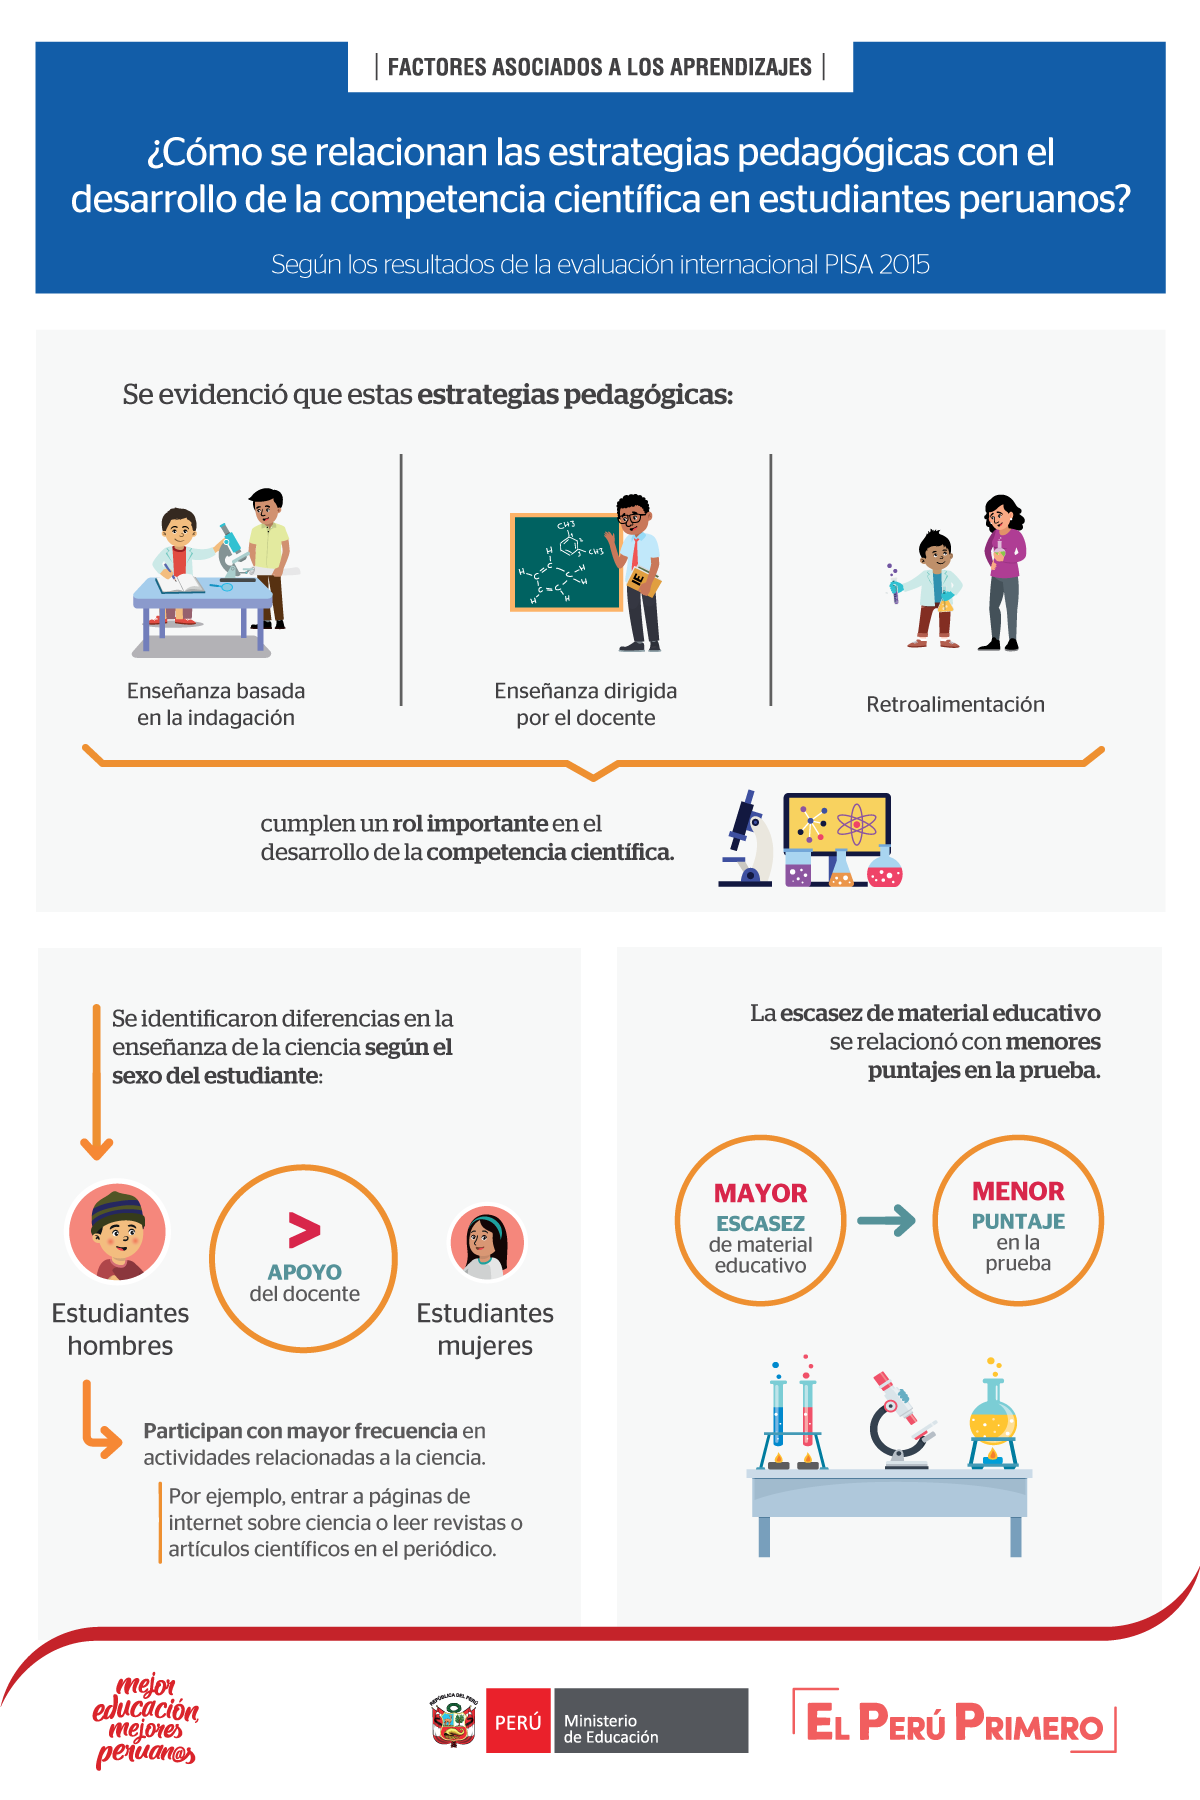 ¿Cómo se relacionan las estrategias pedagógicas con el desarrollo de la competencia científica en estudiantes peruanos?